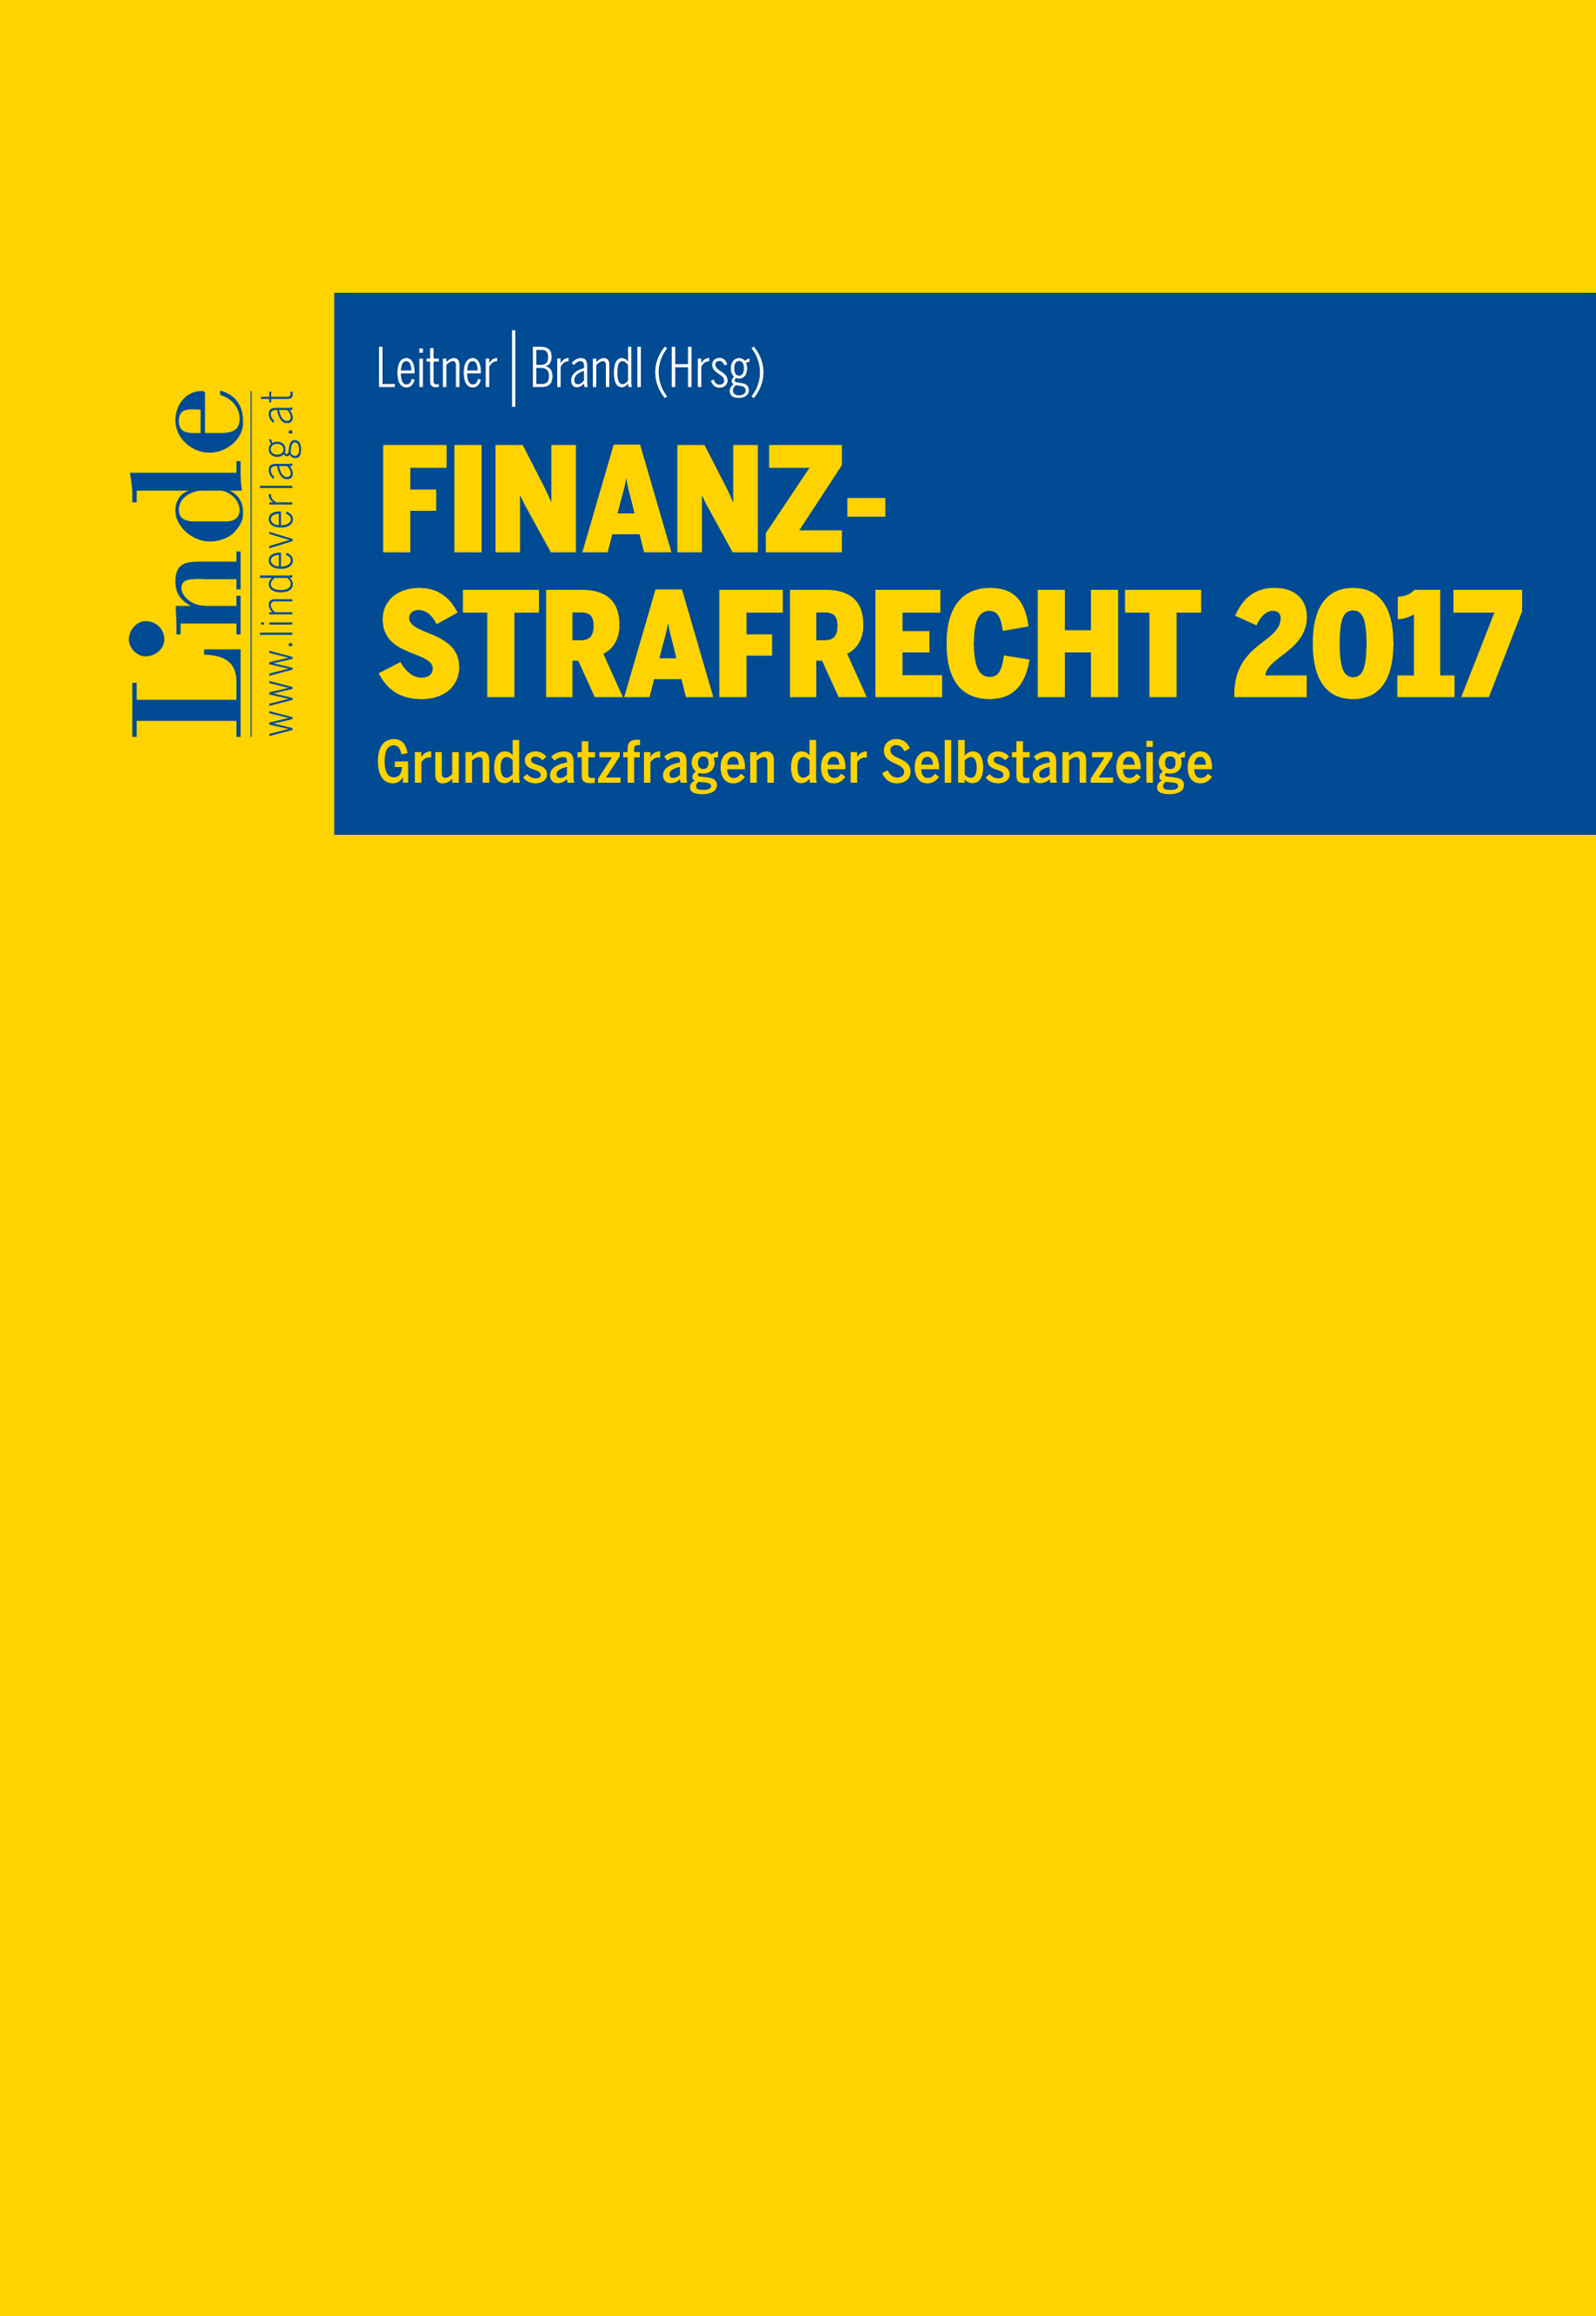 Finanzstrafrecht 2017 : Grundsatzfragen der Selbstanzeige : mit neuester Rechtsprechung und Literatur zum Finanzstrafrecht / herausgegeben von Roman Leitner, Rainer Brandl.